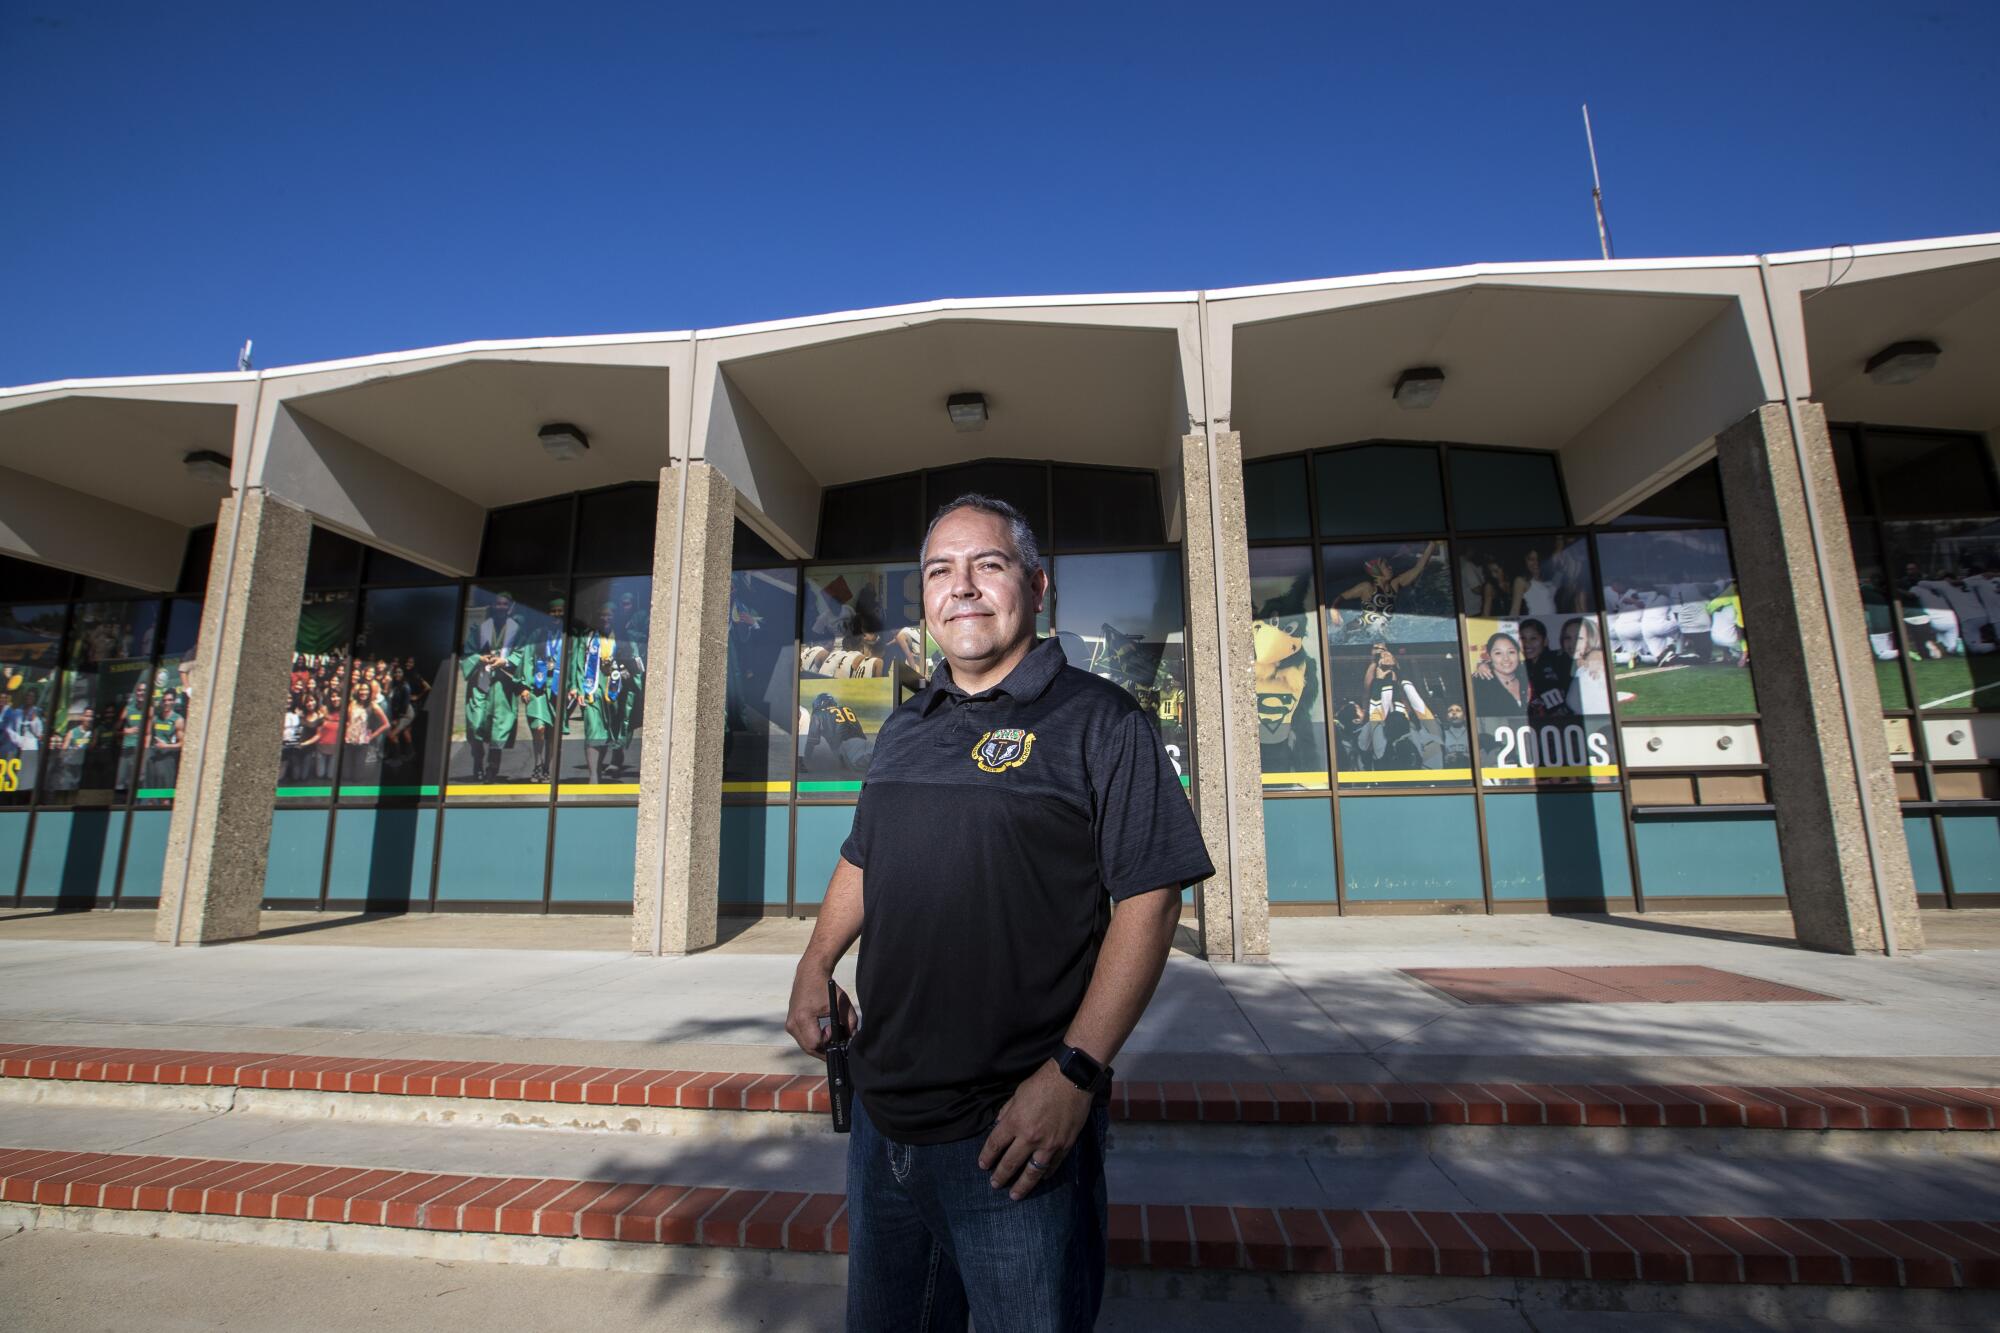 Gerardo Correa, quien marchó contra la Proposición 187 cuando era adolescente, ahora es subdirector en la Escuela Preparatoria Saddleback en Santa Ana.